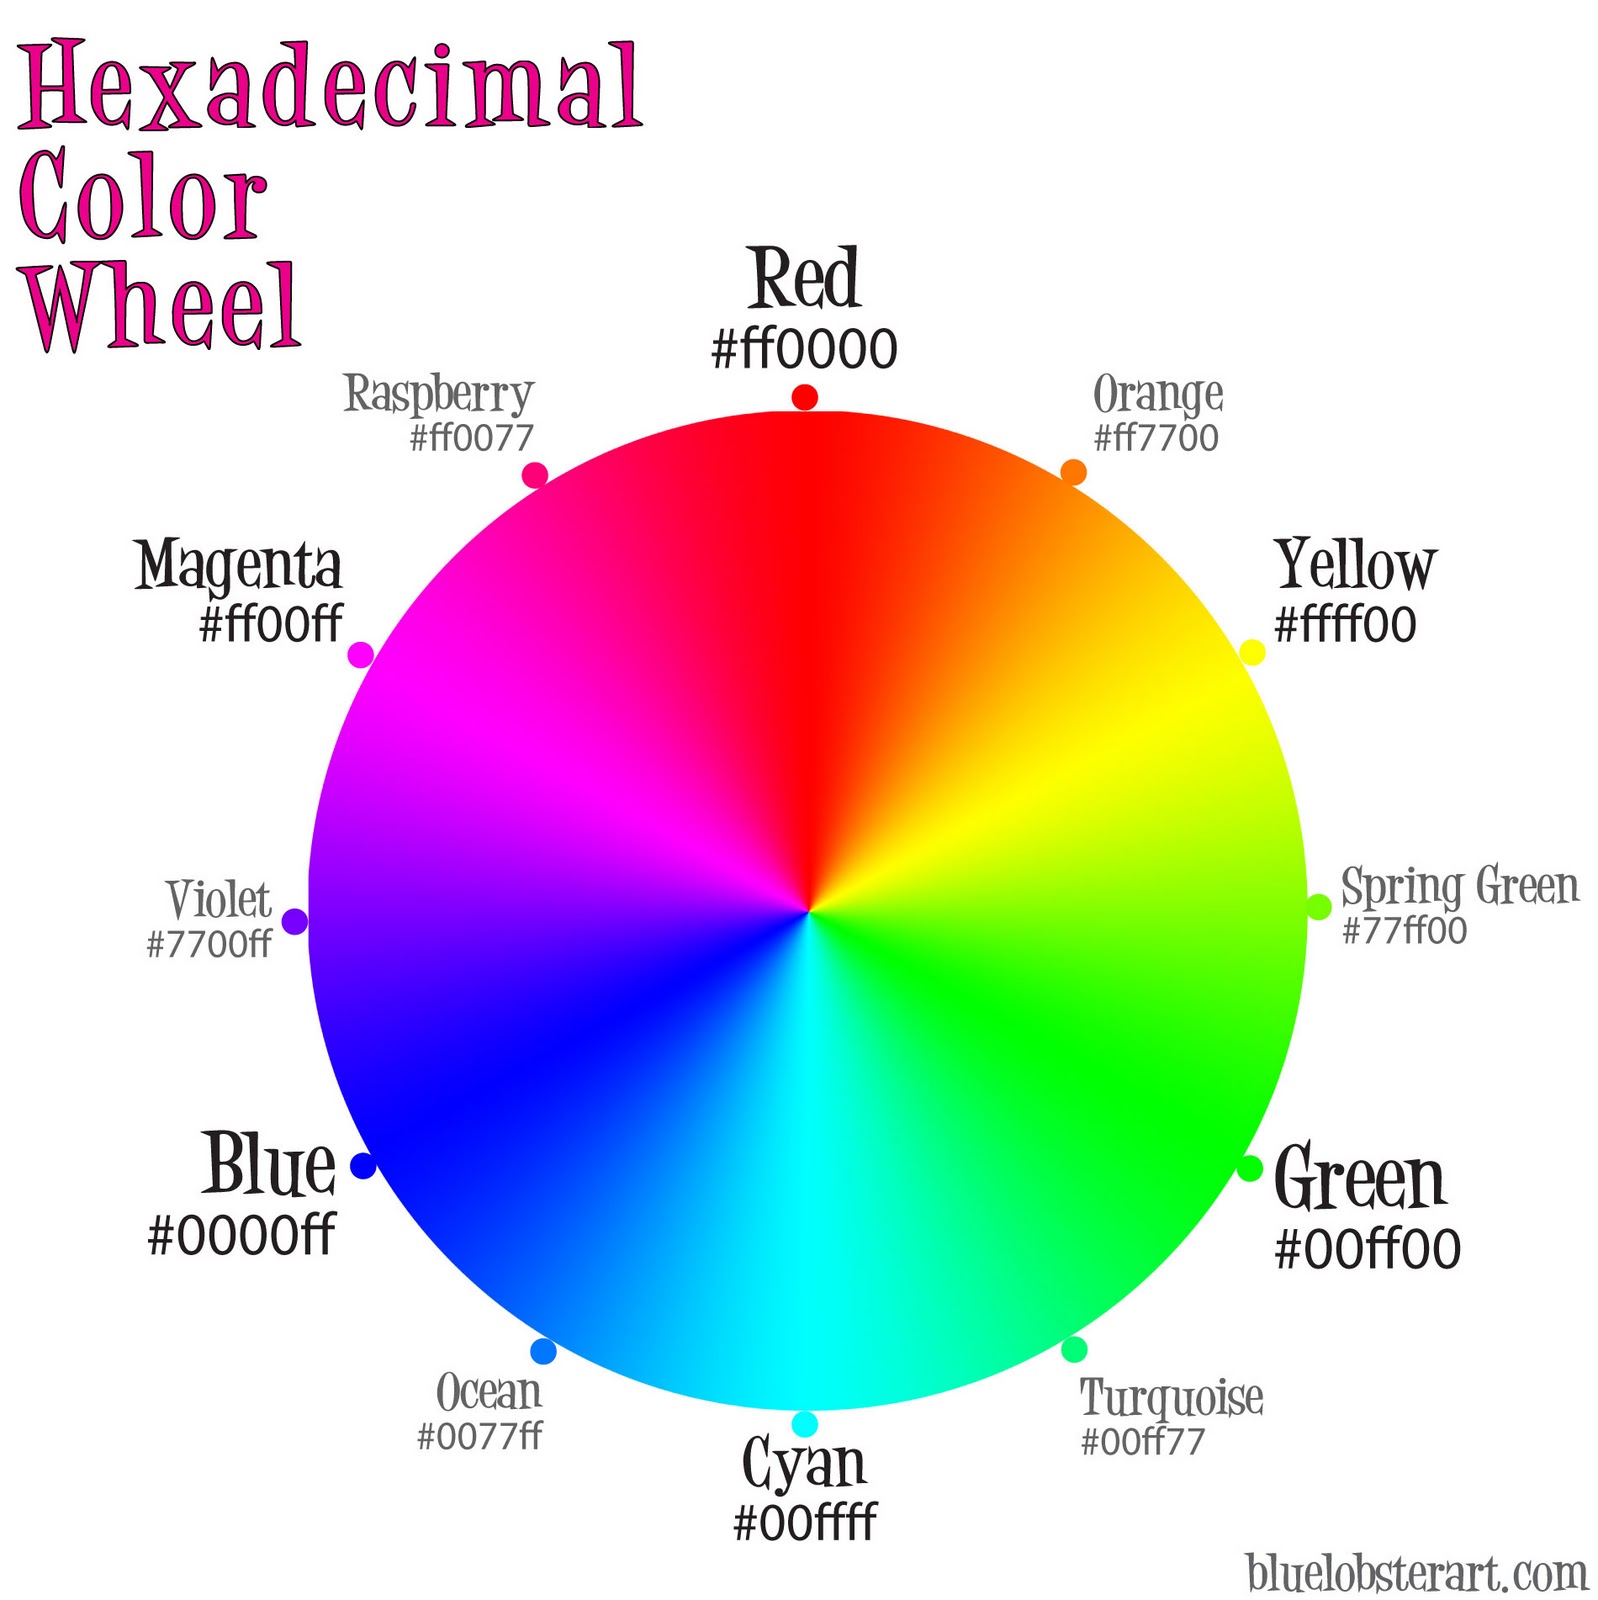 http://4.bp.blogspot.com/-1TFIe2-vACU/Tv-N-Q2STvI/AAAAAAAABRA/FTCwT8oz_m0/s1600/hexadecimal-color-wheel-lg.jpg